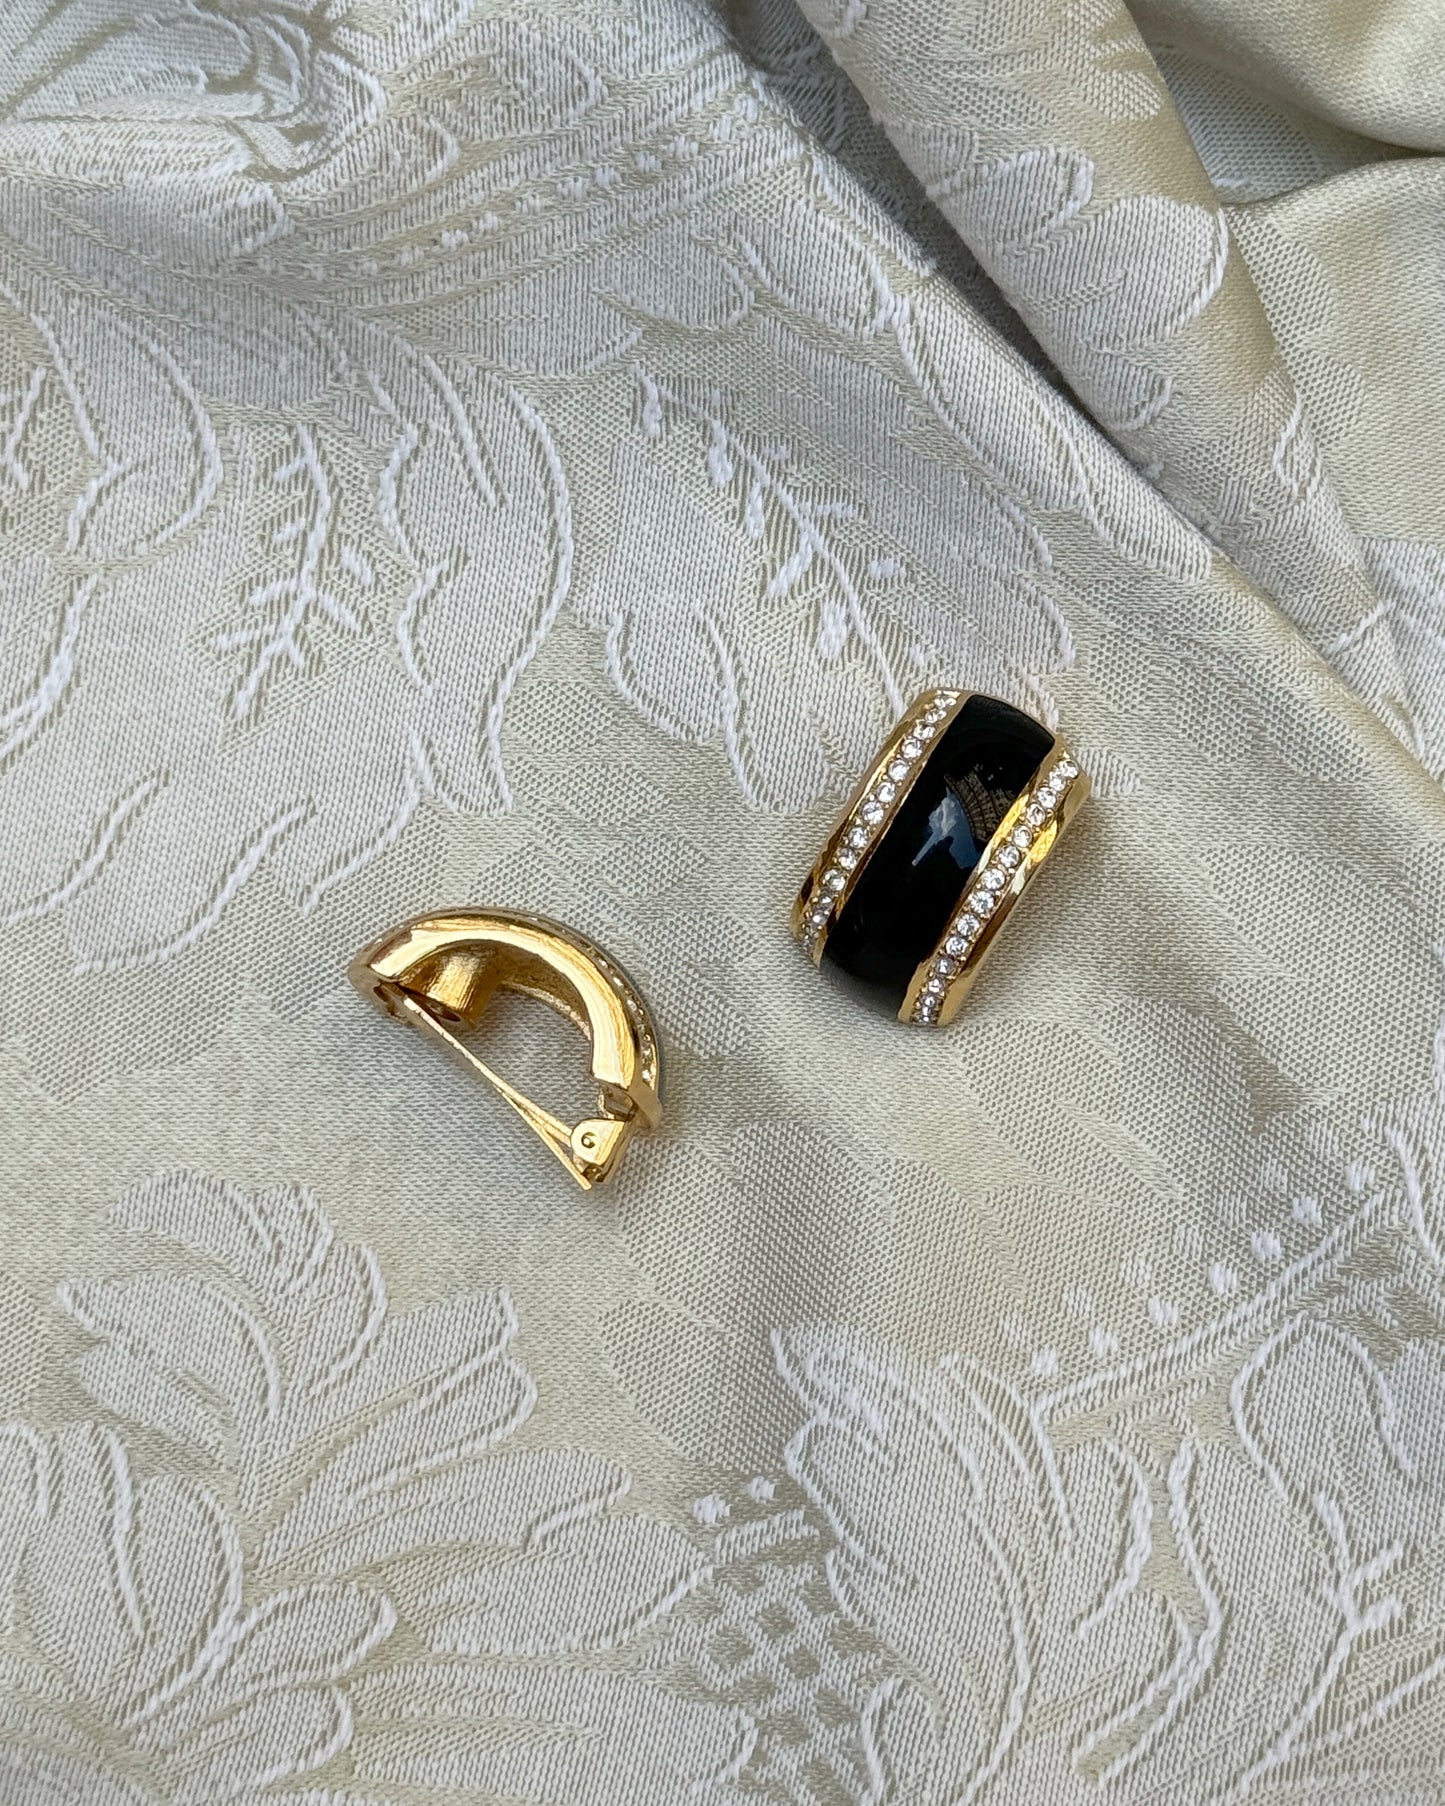 Vintage Christian Dior Black Enamel Half Hoop Earrings